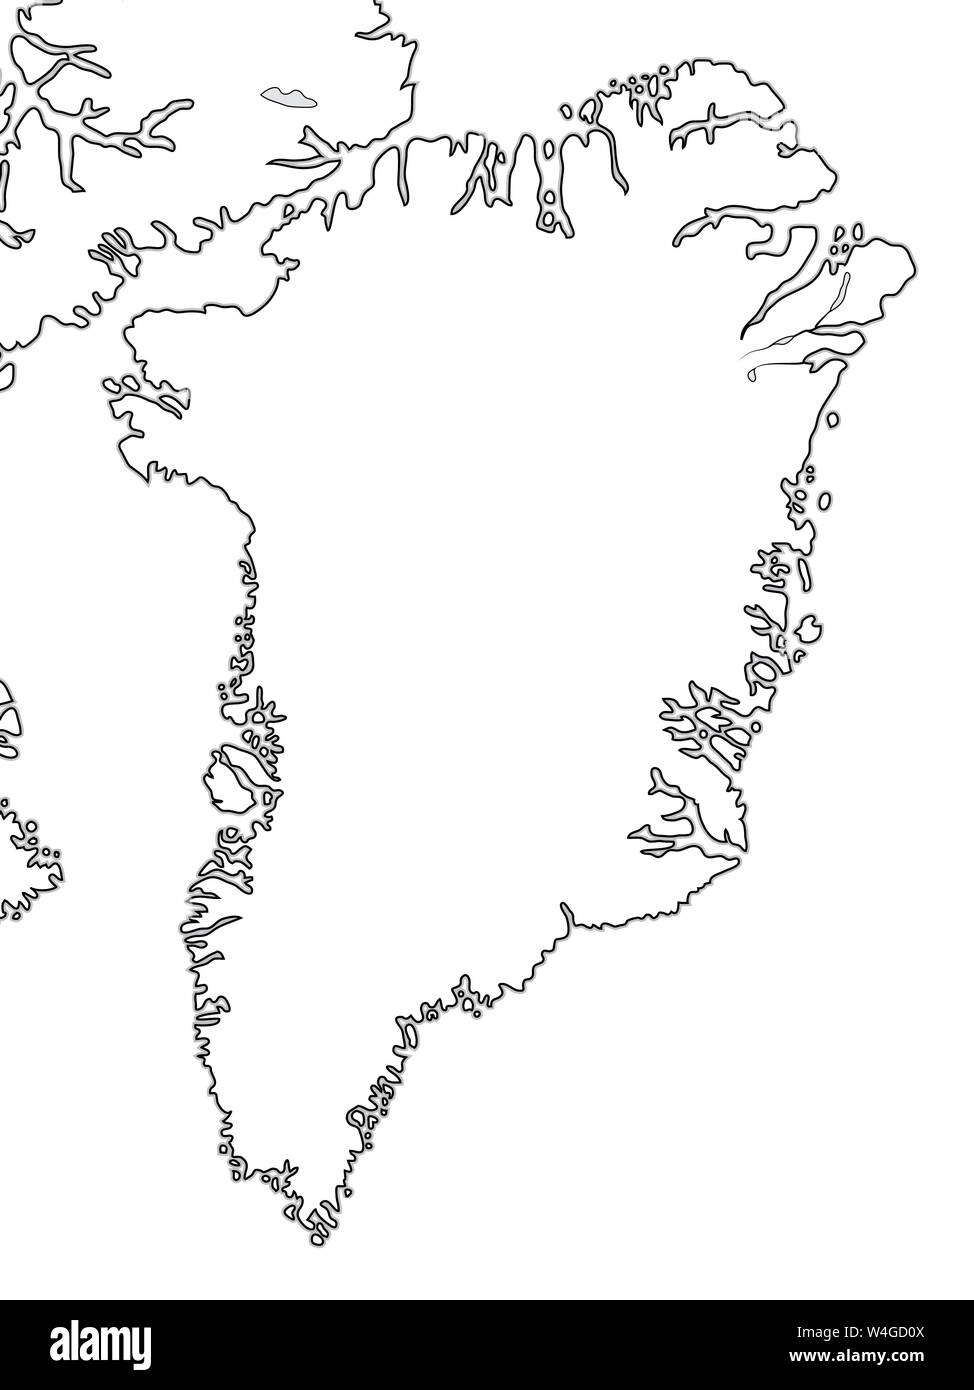 Mappa mondiale della Groenlandia - Groenlandia, Artico arcipelago, Oceano Atlantico. Grafico geografica con coste oceaniche e le isole. Foto Stock